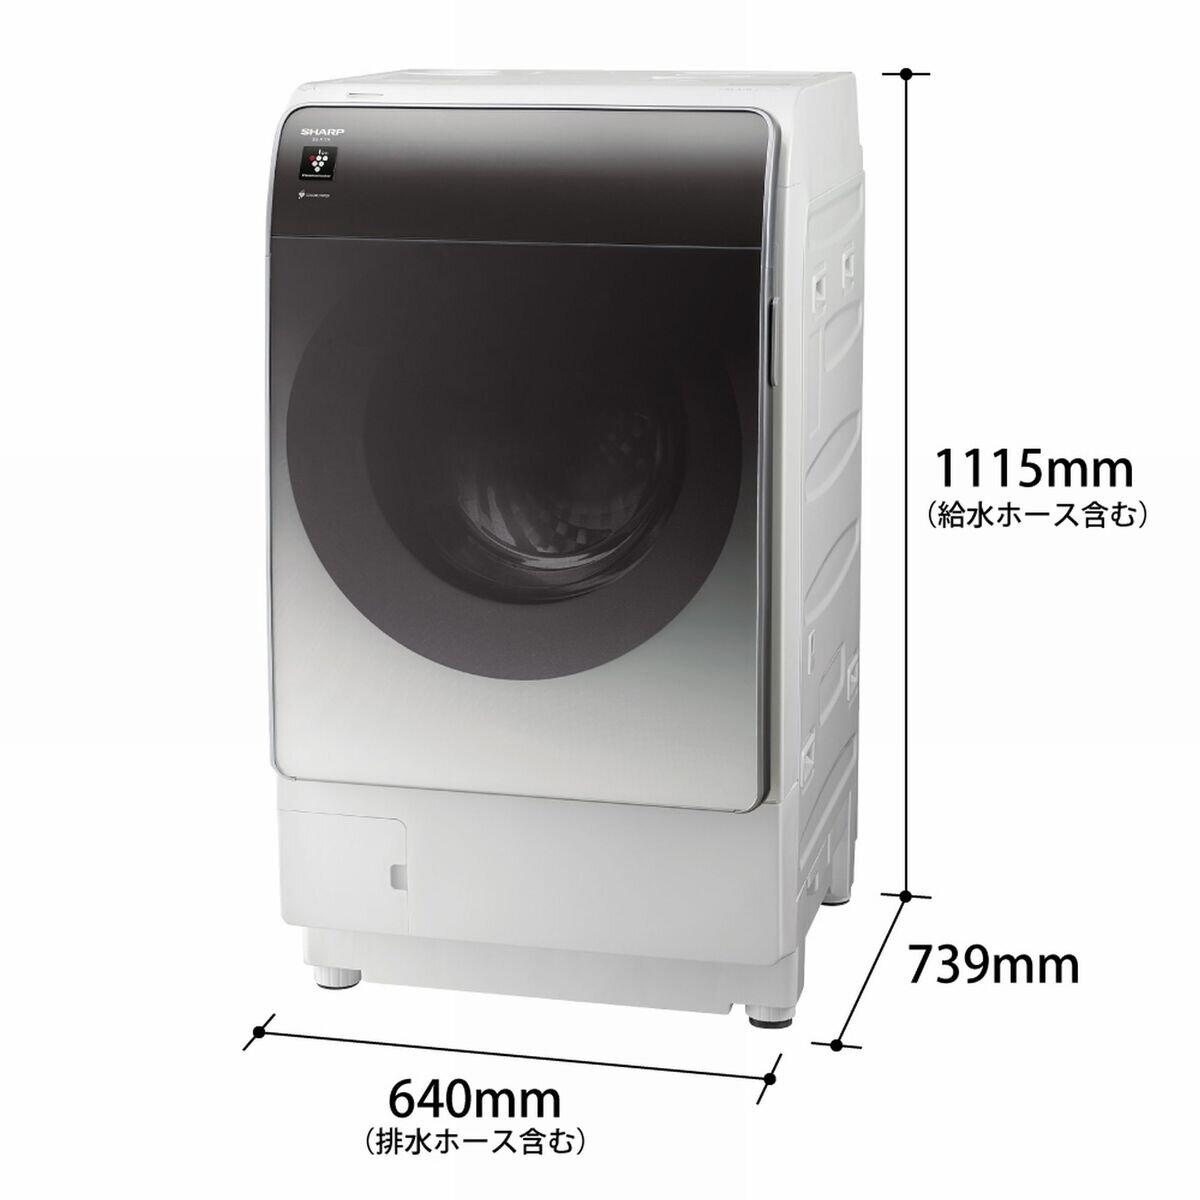 シャープドラム式洗濯乾燥機 洗濯 11kg 乾燥 6kg ES-X11A SR 